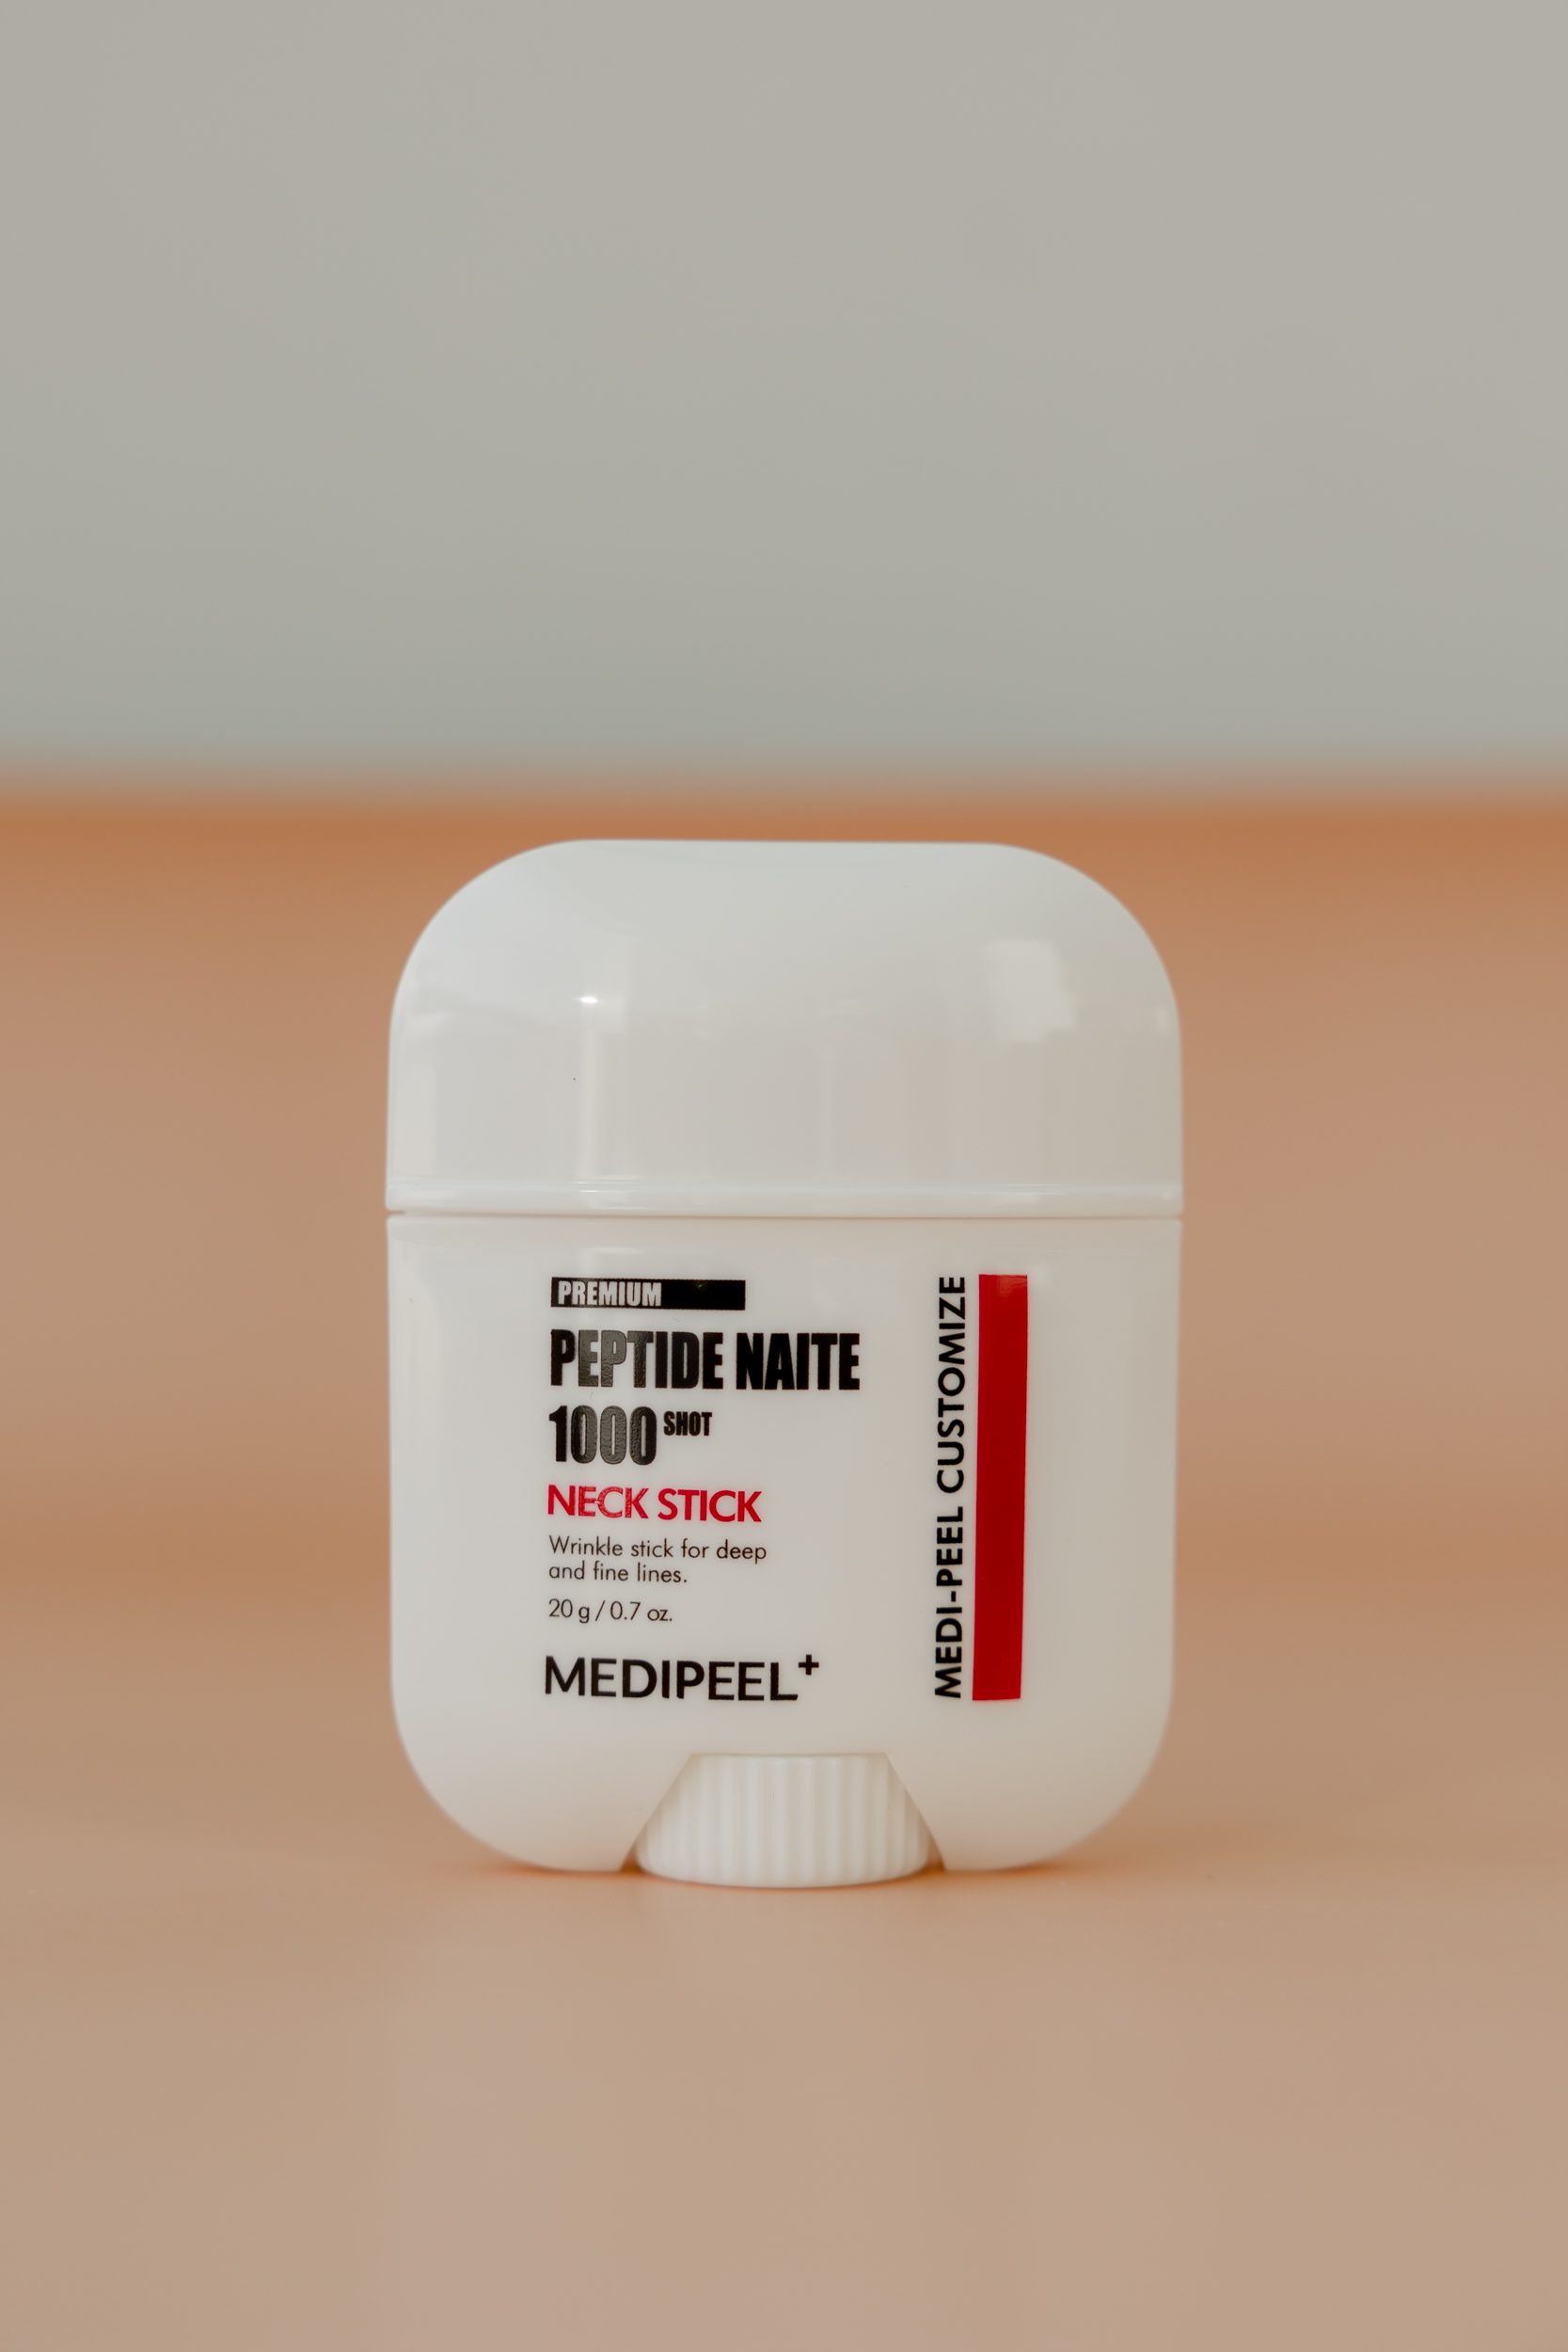 Укрепляющий стик для зоны шеи и декольте MEDI-PEEL Premium Peptide Naite 1000 Shot Neck Stick (20g)